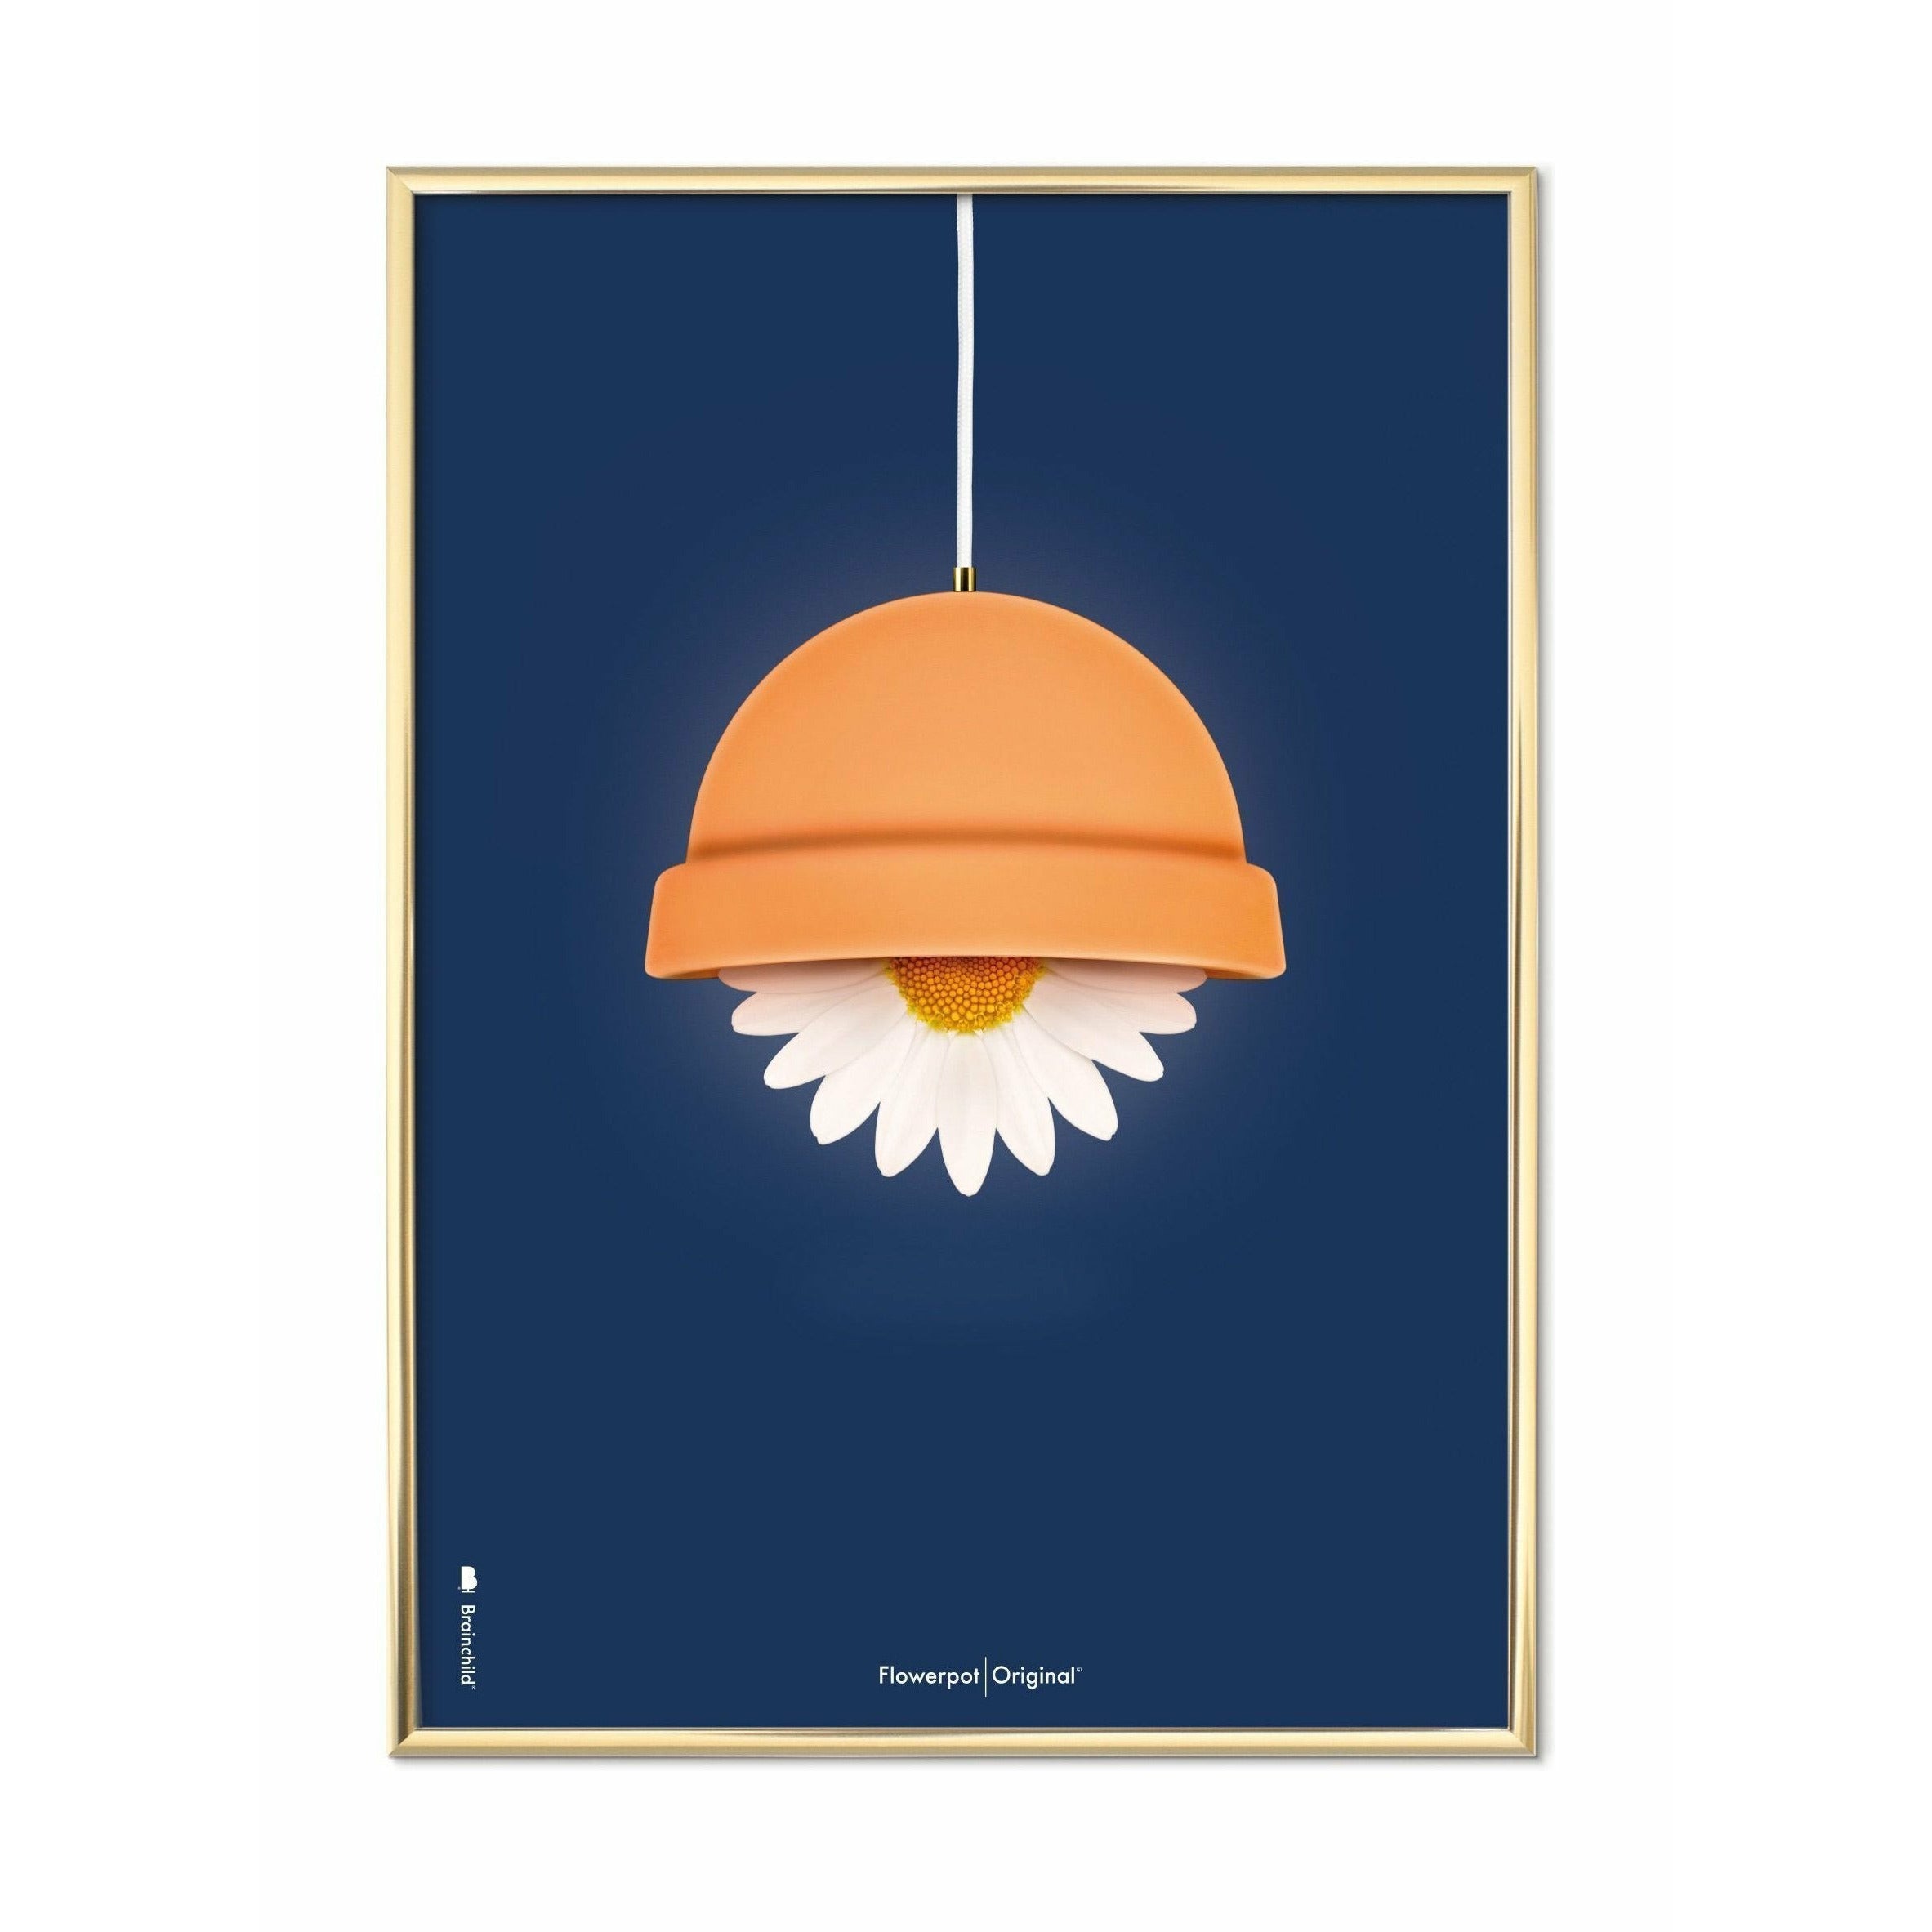 Brainchild Blumentopf Classic Poster, messingfarbener Rahmen A5, dunkelblauer Hintergrund